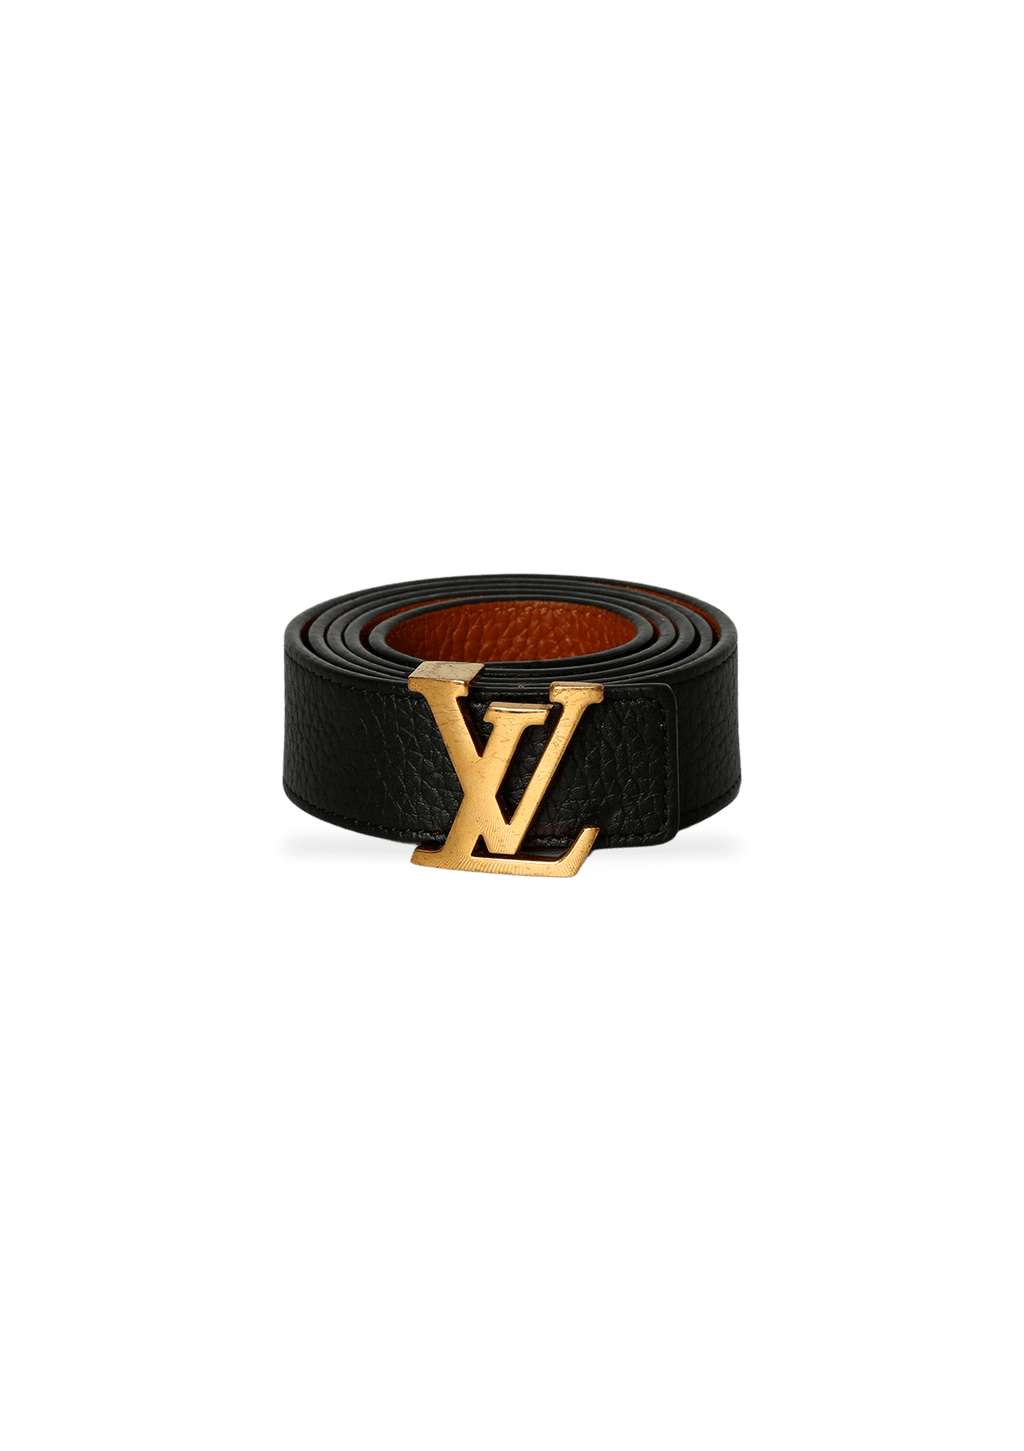 Carteira Louis Vuitton (CR 4)